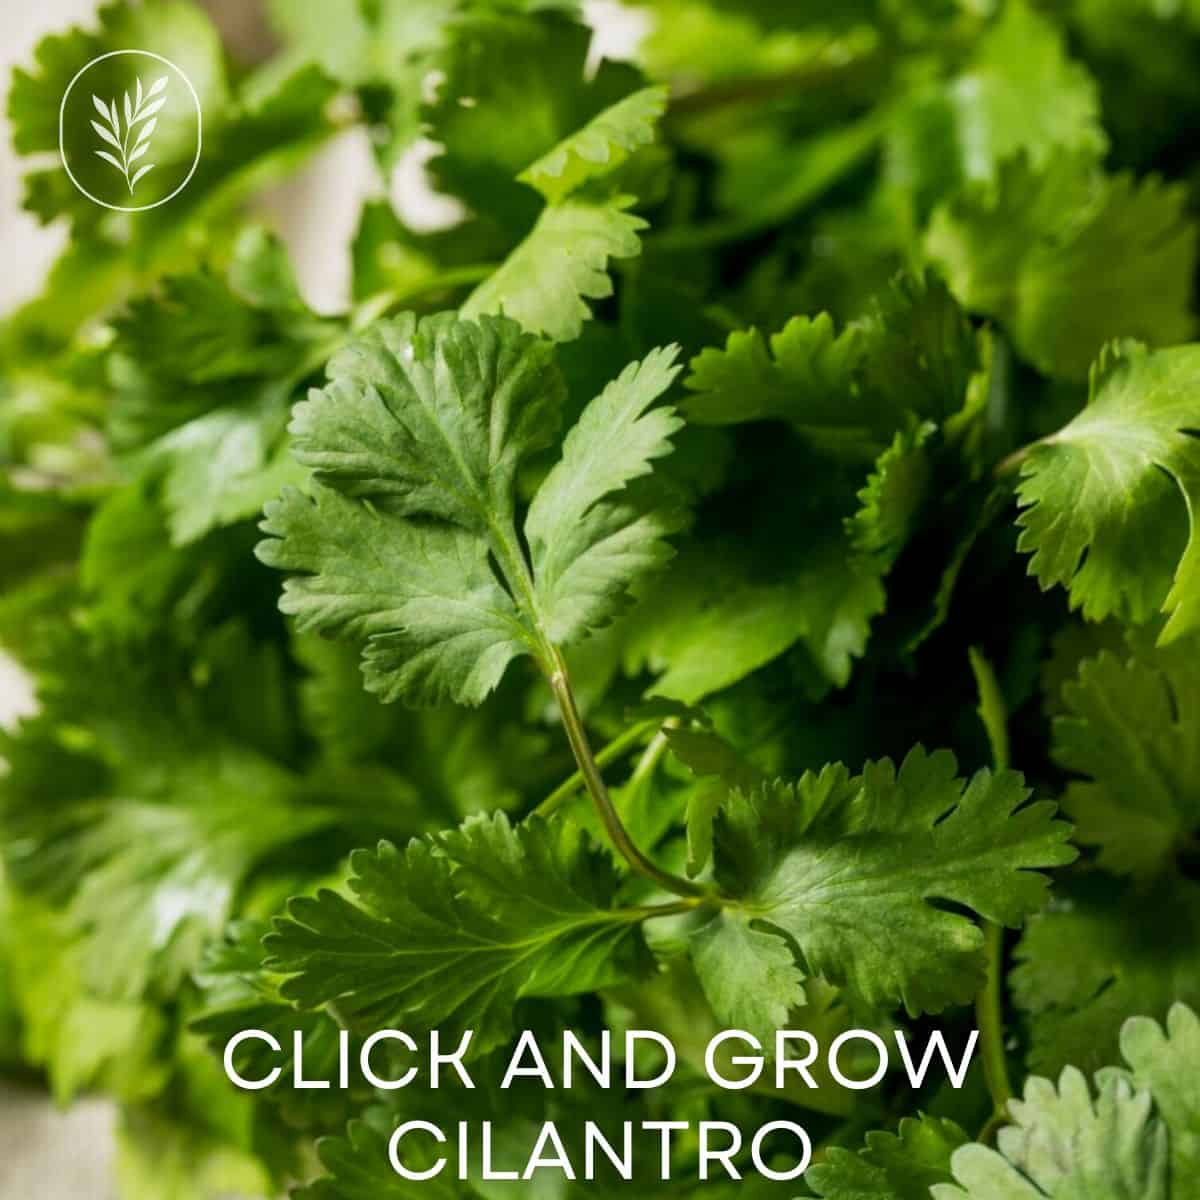 Click and grow cilantro via @home4theharvest